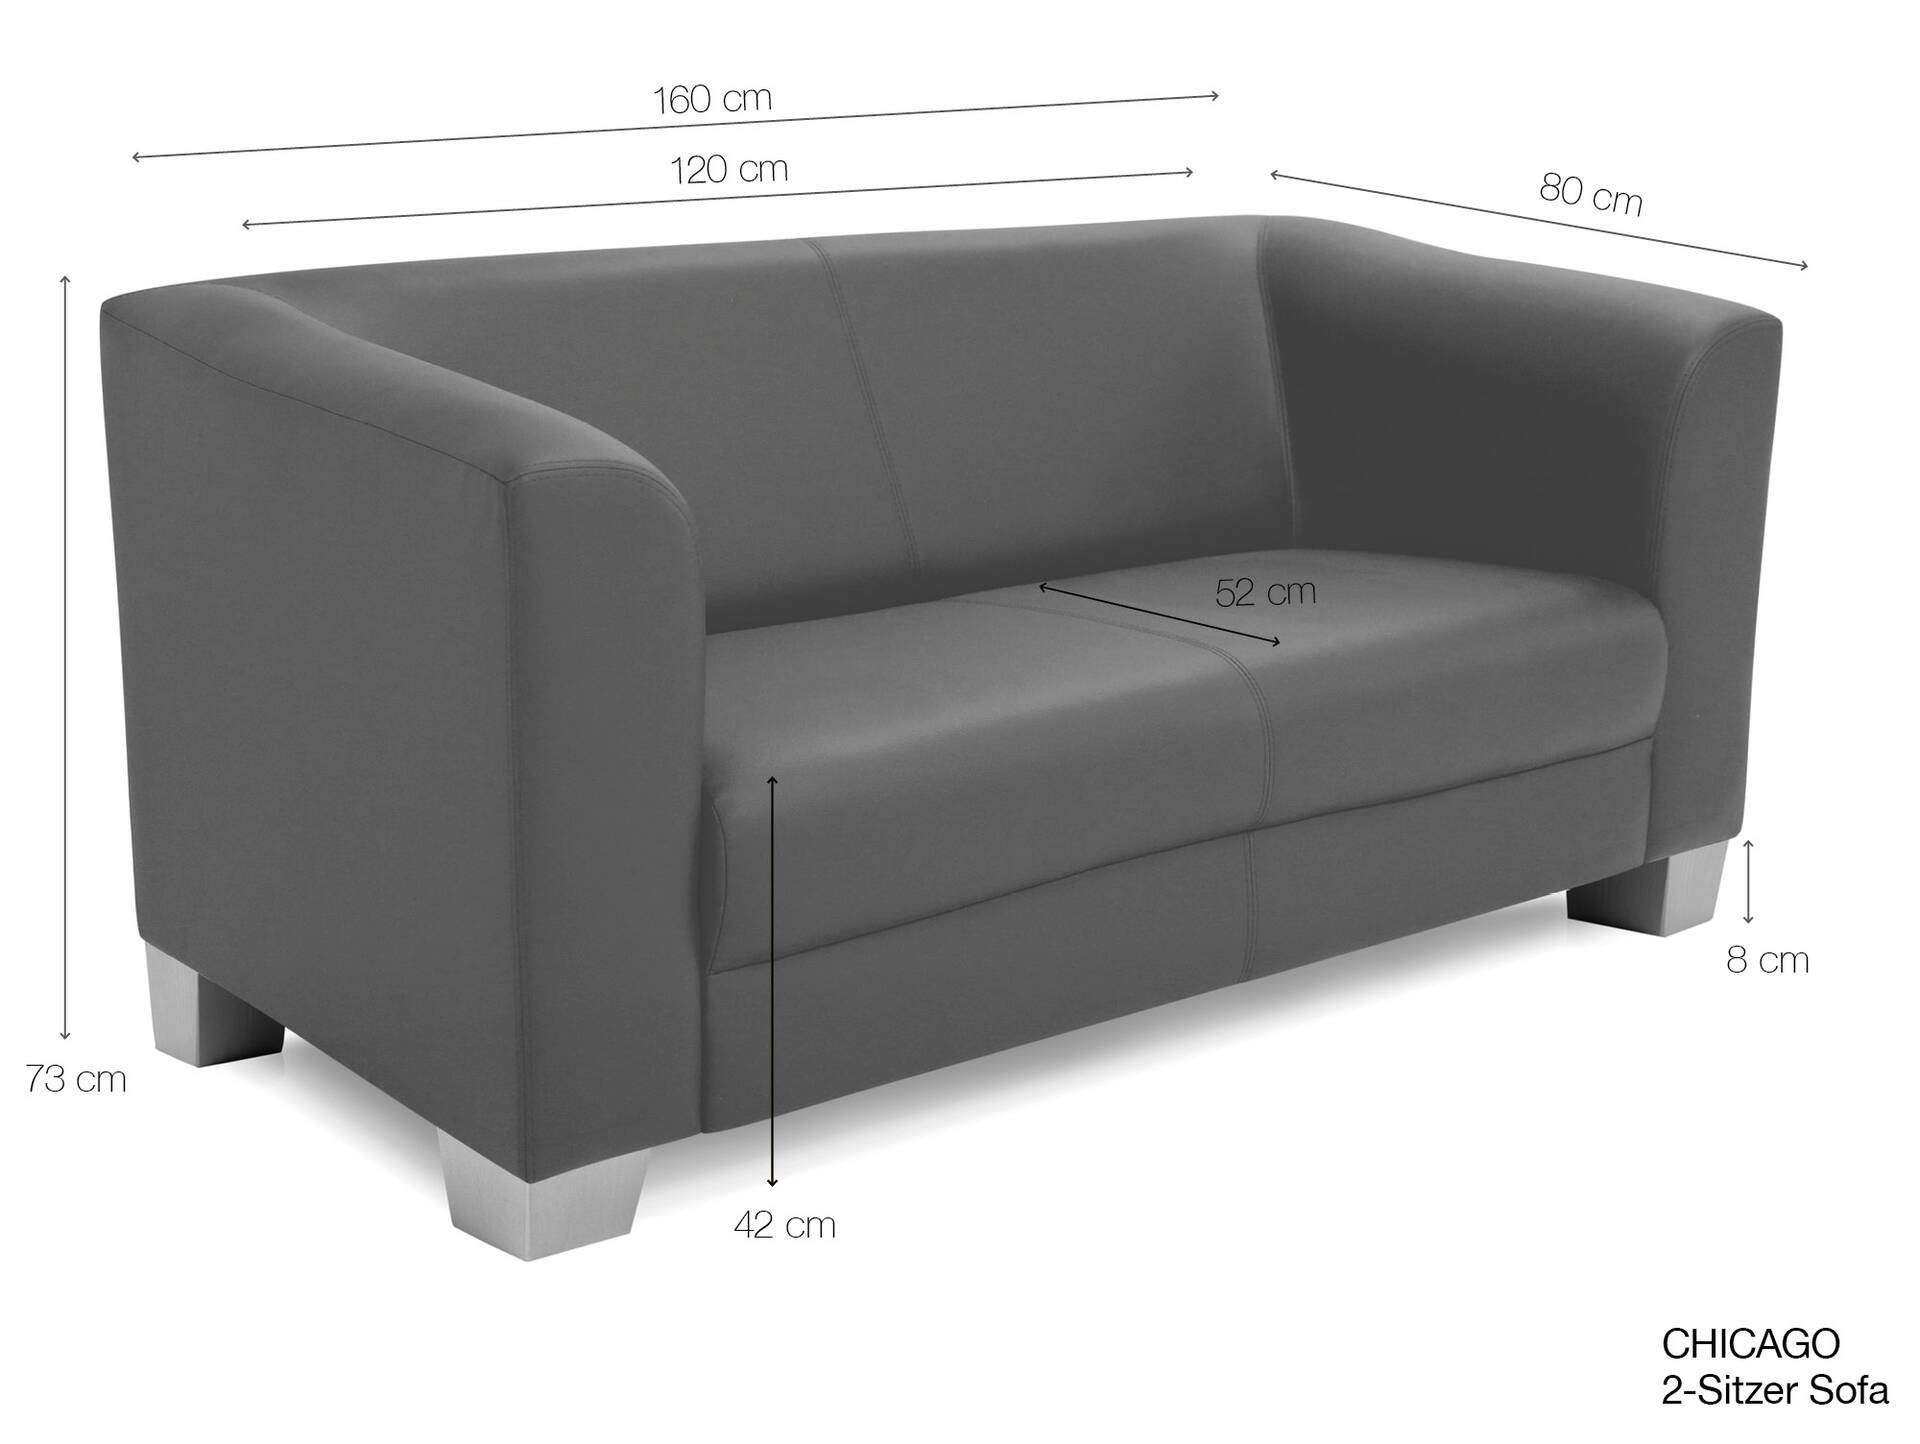 CHICAGO 2-Sitzer Sofa, Material Kunstleder weinrot